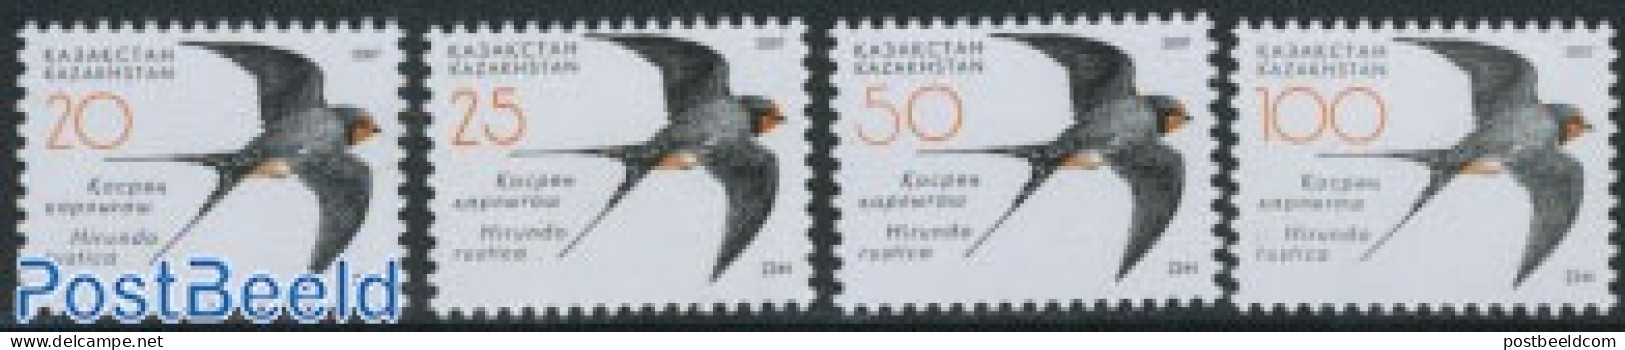 Kazakhstan 2007 Definitives, Birds 4v, Mint NH, Nature - Birds - Kasachstan